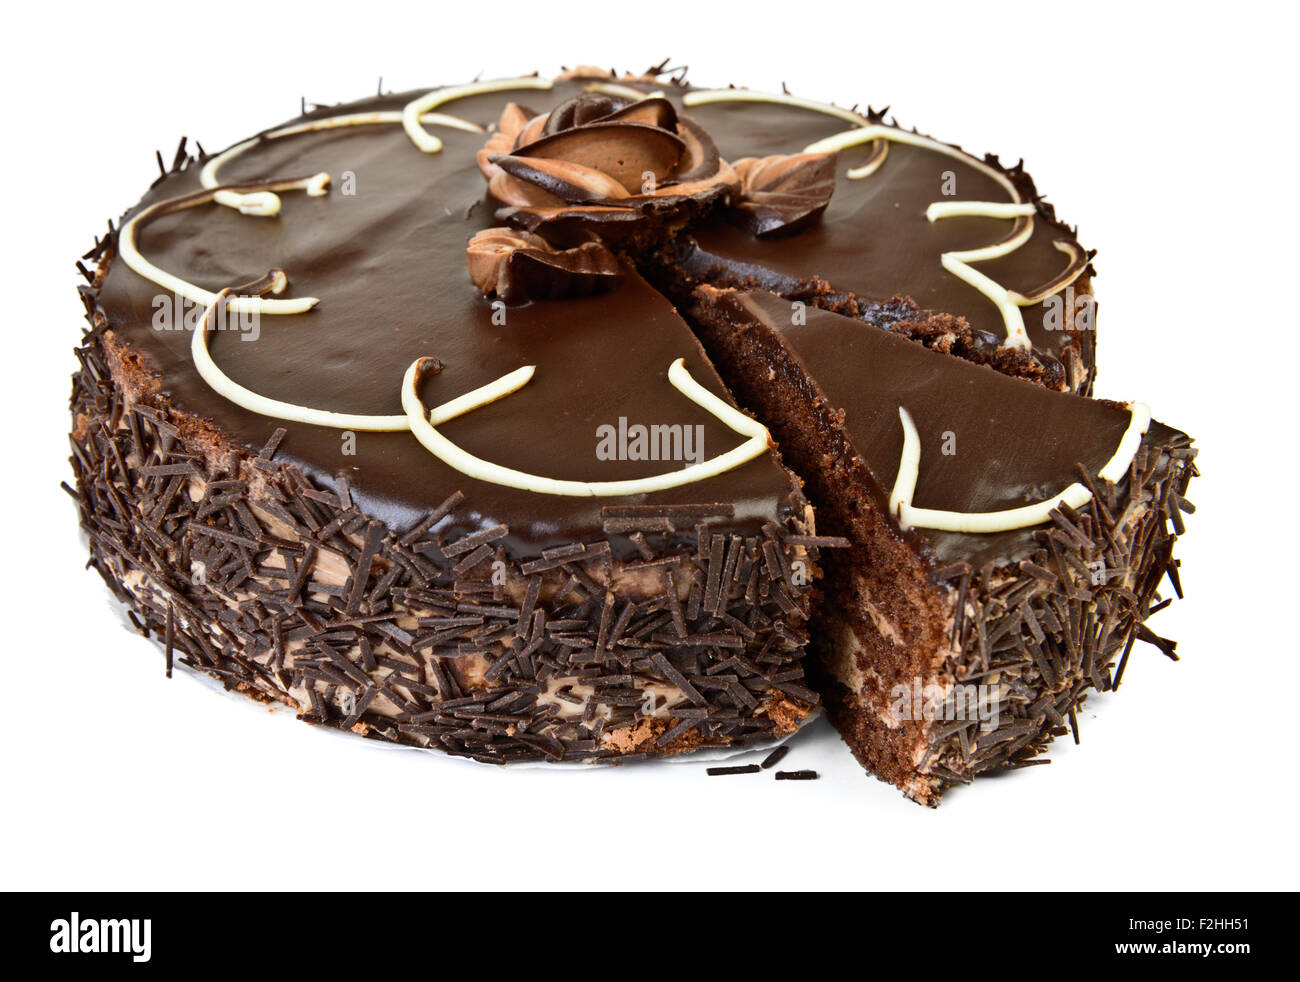 Gâteau au chocolat, isolé sur fond blanc Banque D'Images